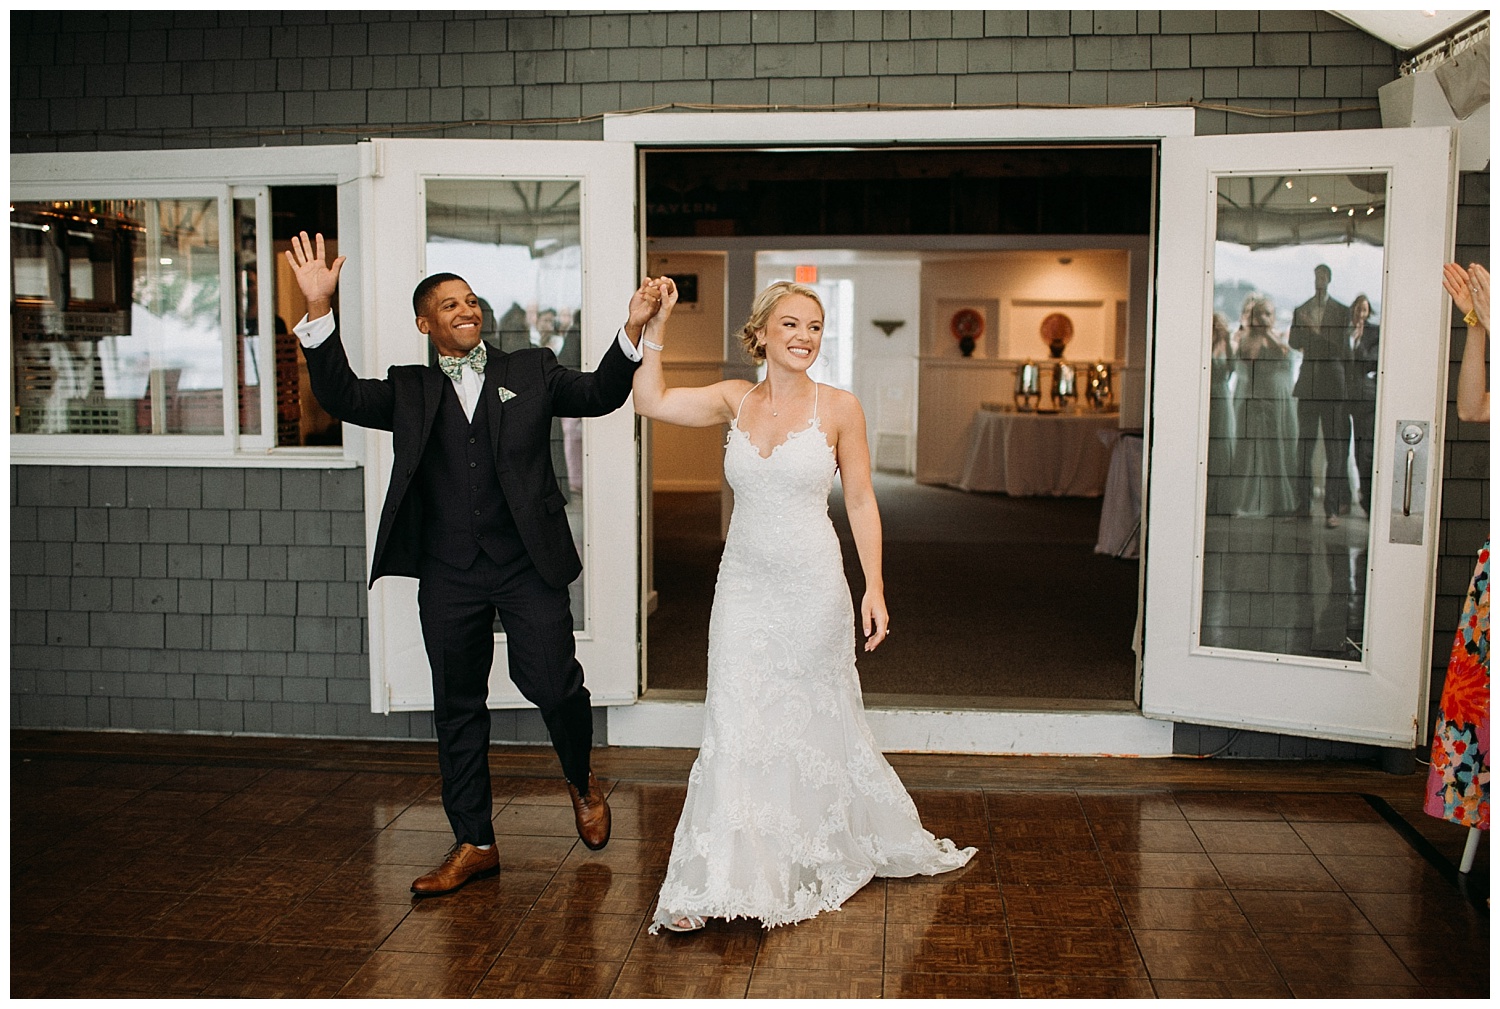 a couple makes their entrance into a wedding reception